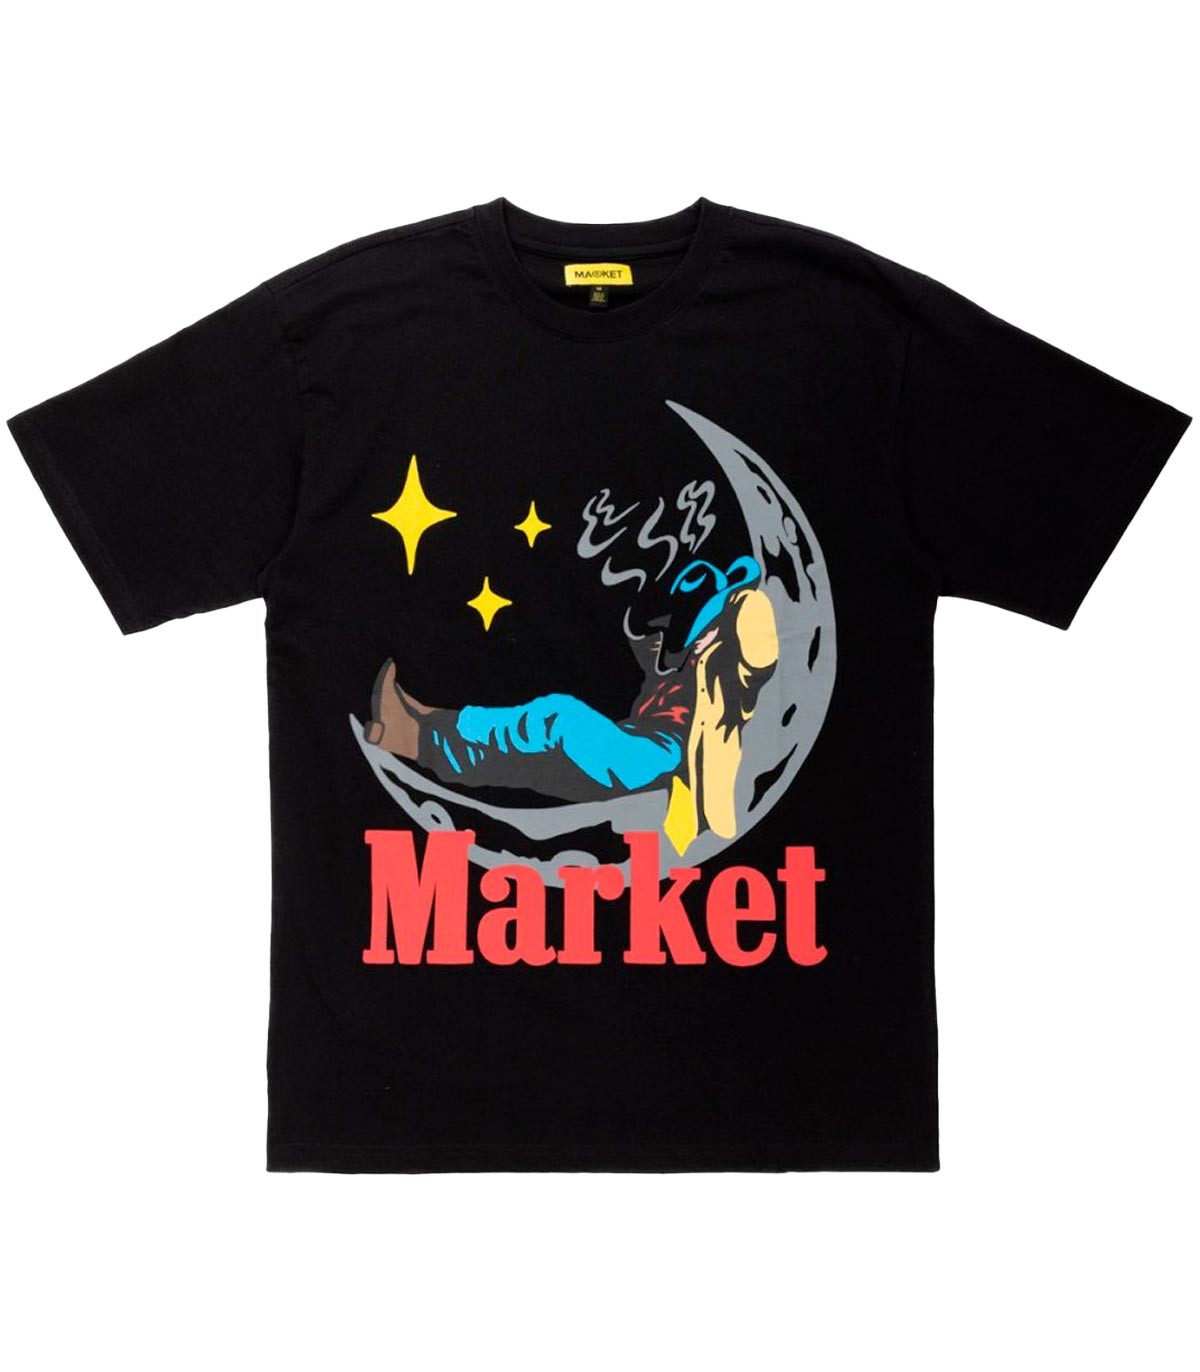 Market - Camiseta Man On Moon - Negro